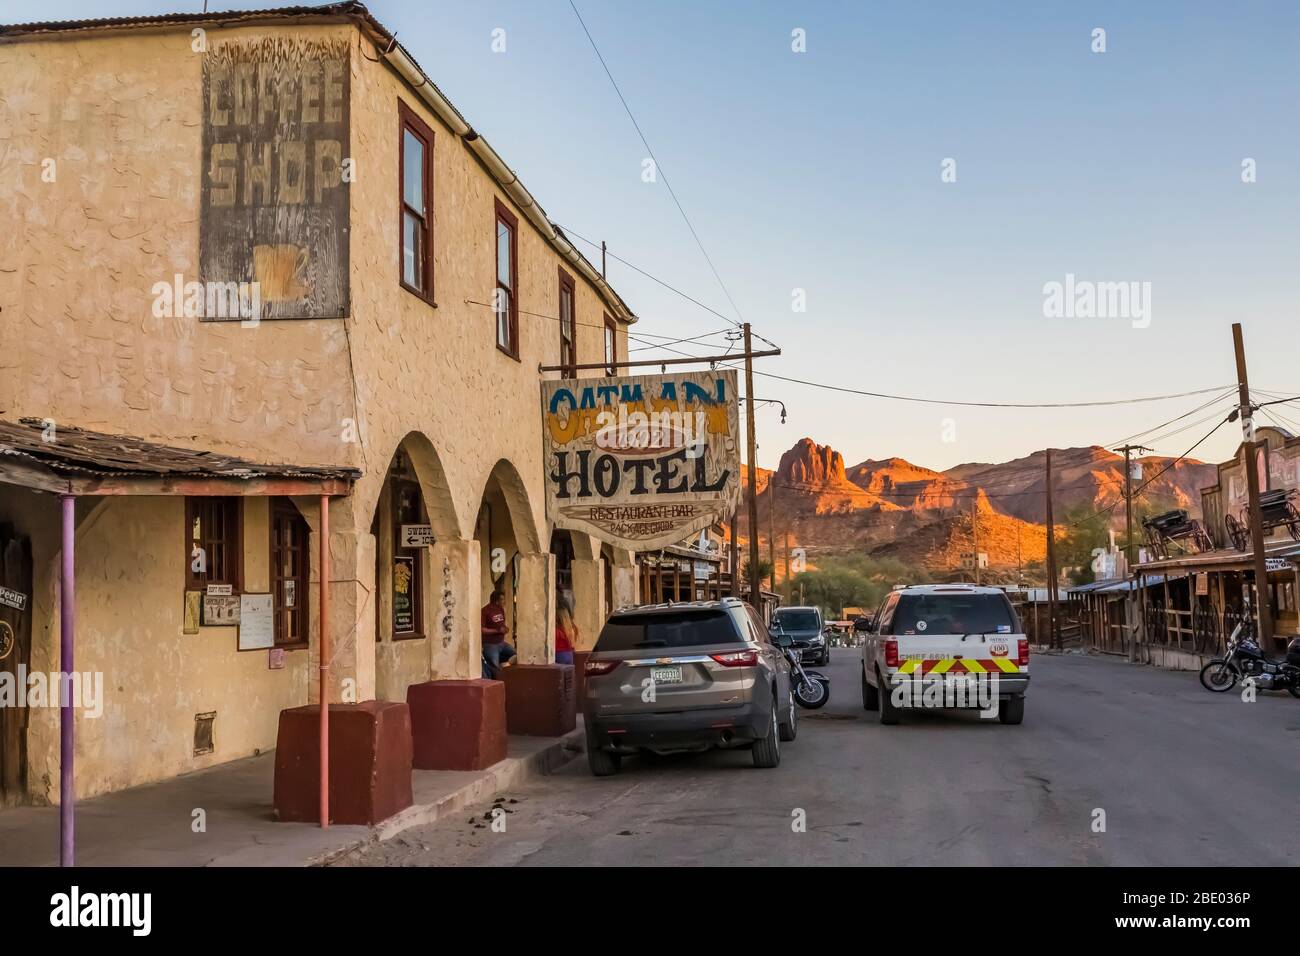 Oatman Hotel dans le centre-ville d'Oatman, une vieille ville minière d'or a transformé la ville touristique le long de la route historique 66 en Arizona, aux États-Unis [pas de modèle ou de libération de propriété; av Banque D'Images